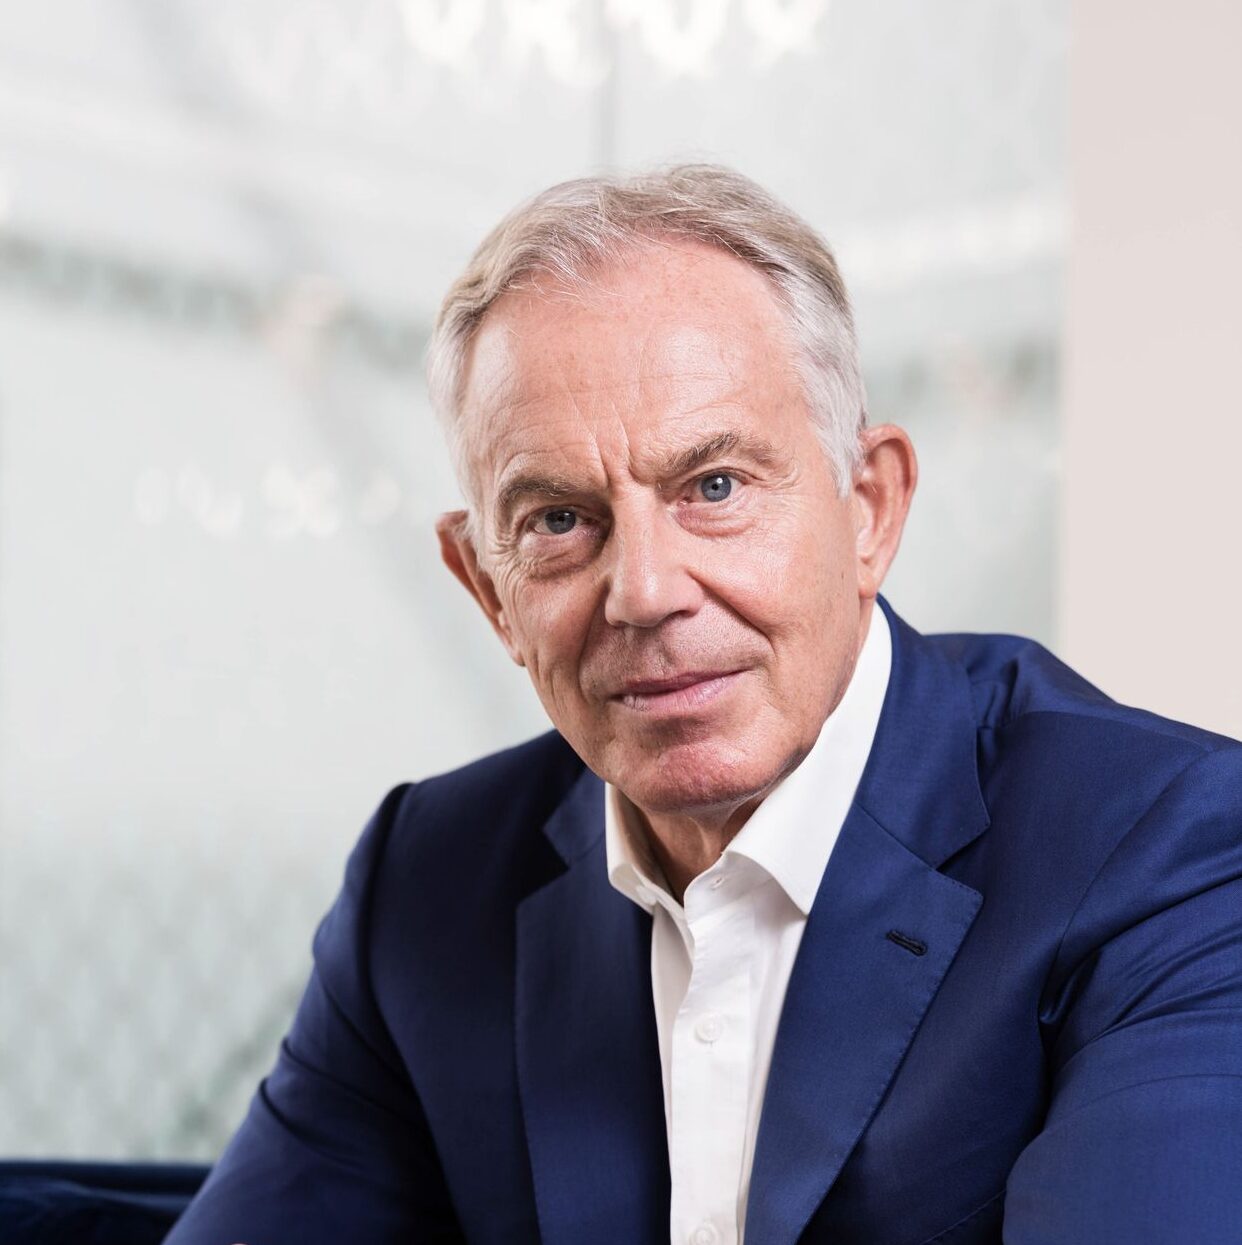 Tony Blair